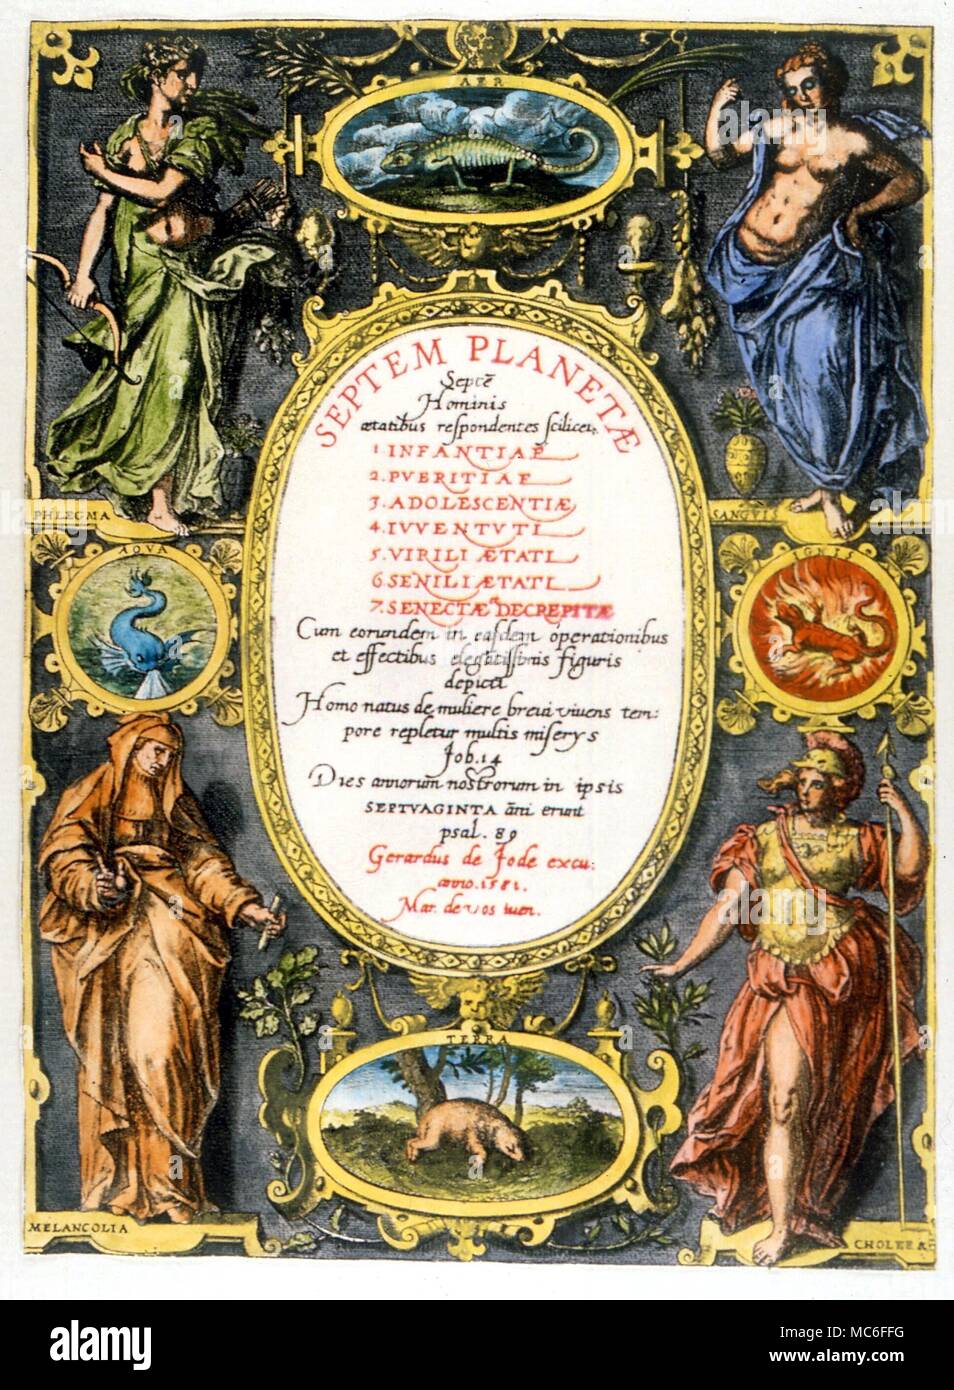 Planeten Titlepage DES eptem Planetae" (Die sieben Planeten) von Gerard de Jode, 1581 Stockfoto